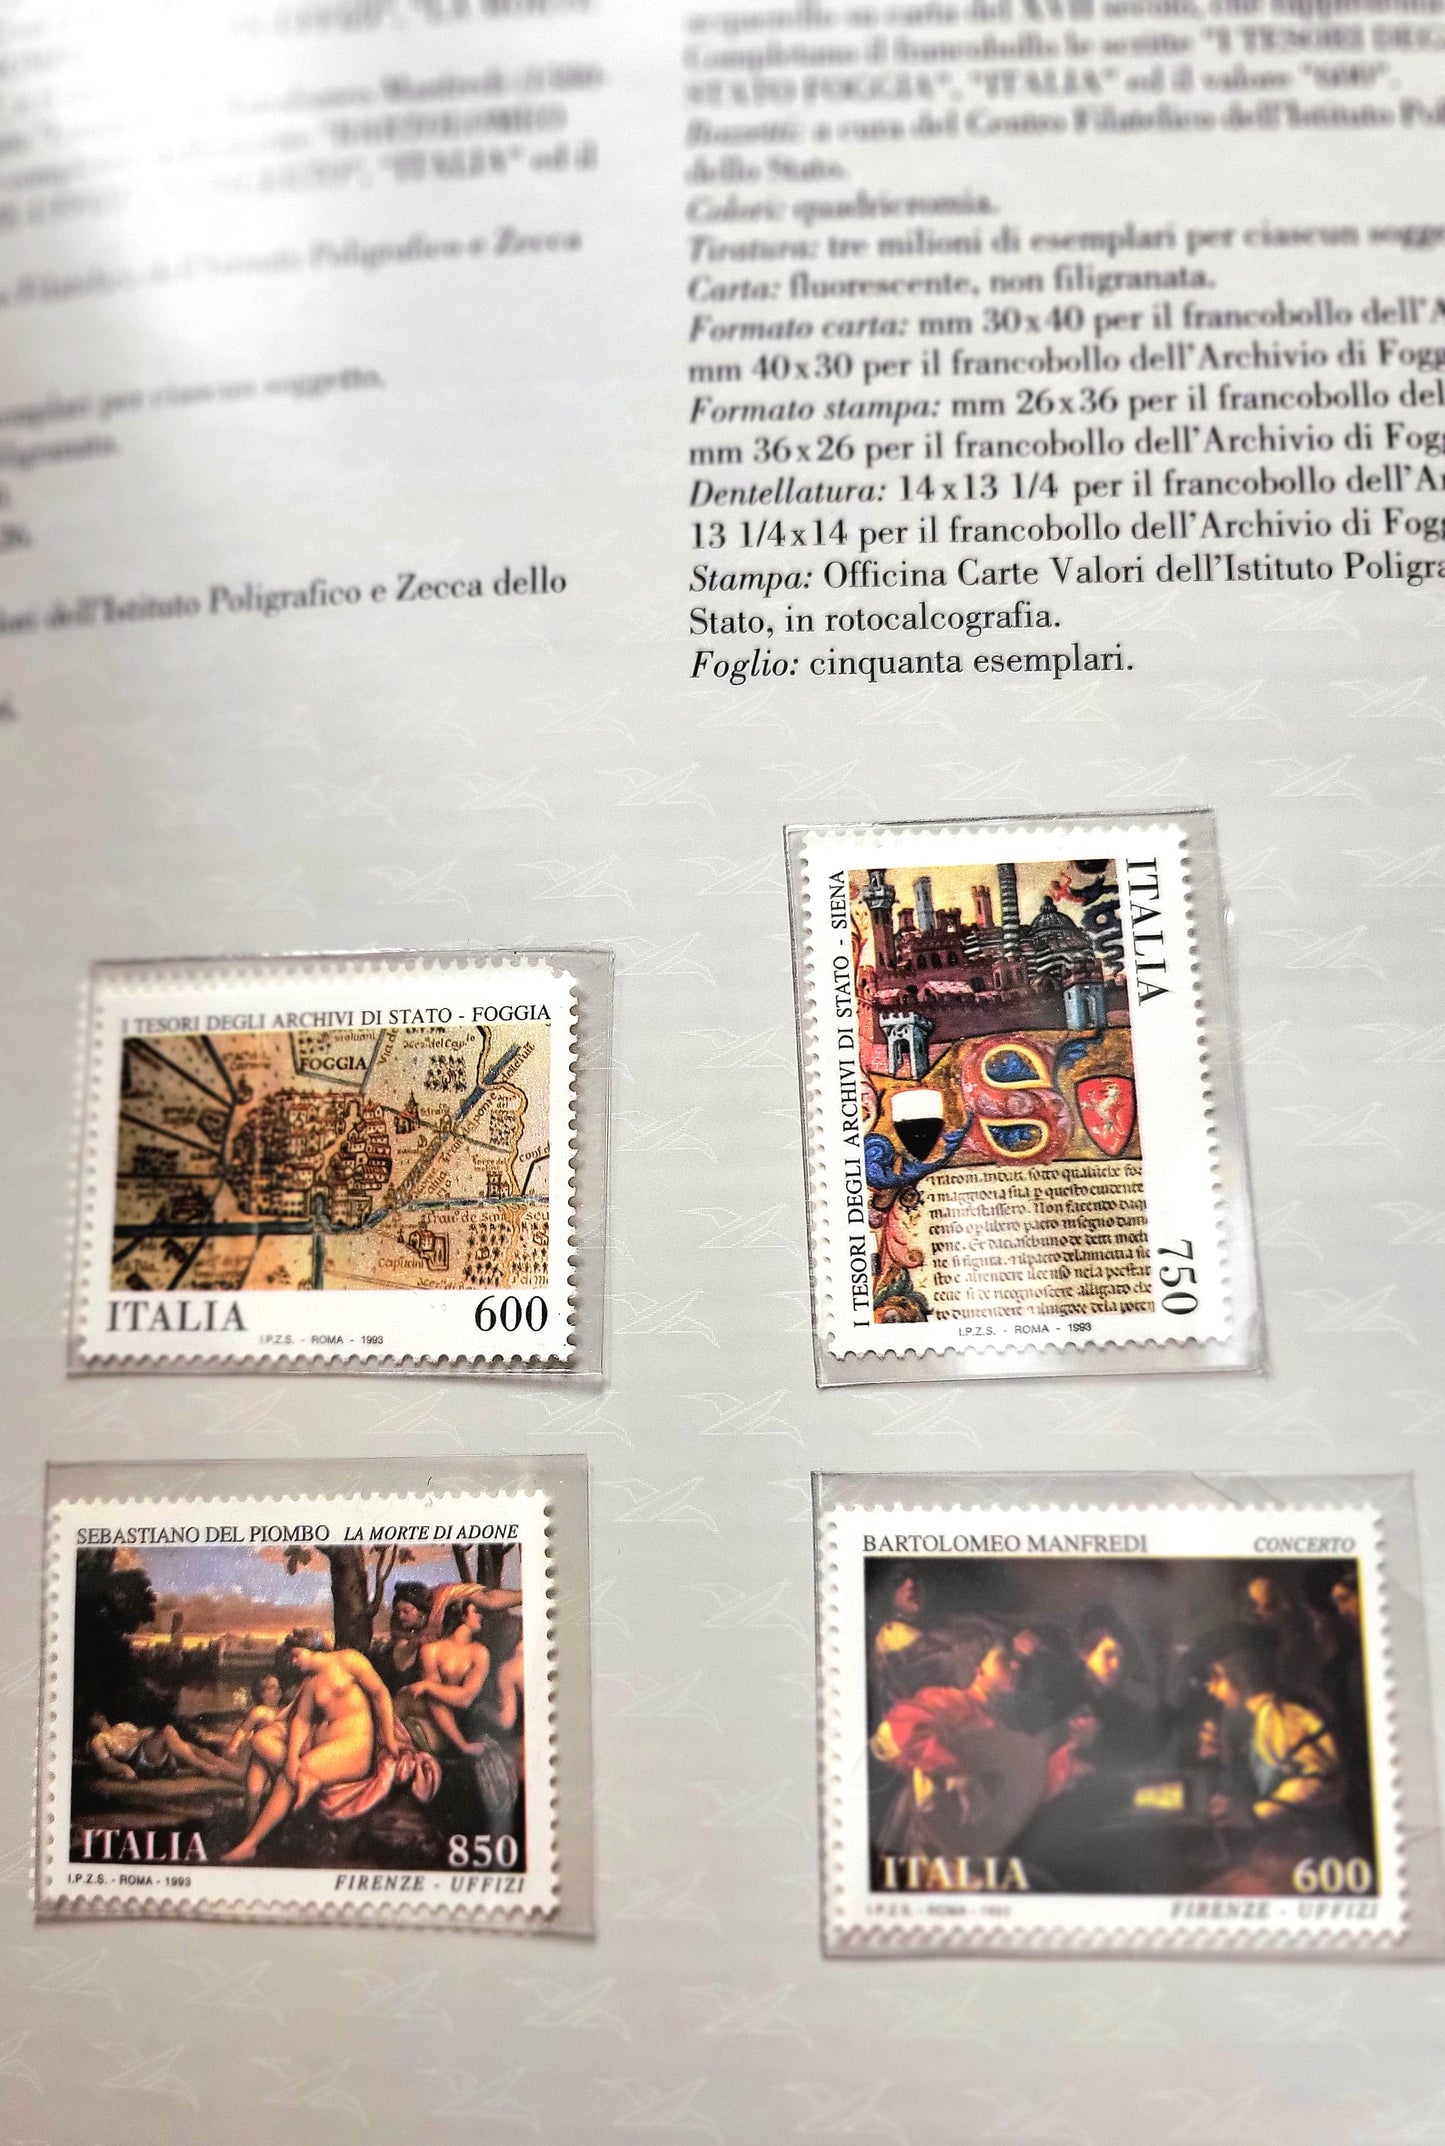 Libro dei francolli emesso dalle Poste Italiane anno 1993